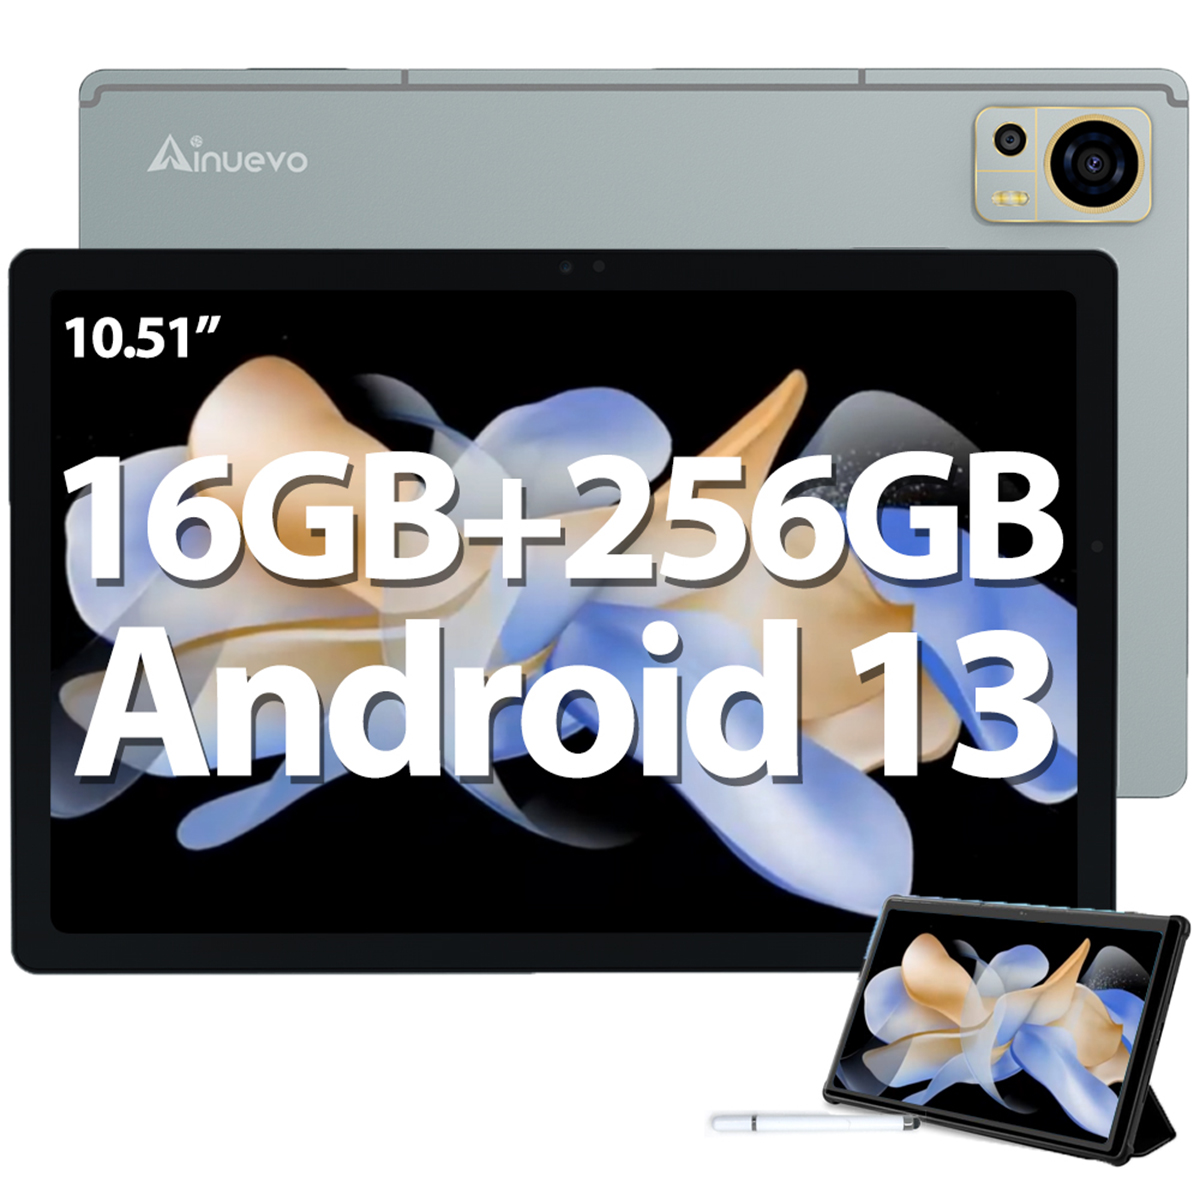 8050mAh AINUEVO GB, Grau 10,51 256 Zoll, 16GB+256GB Android Tab S9 13, Tablet,